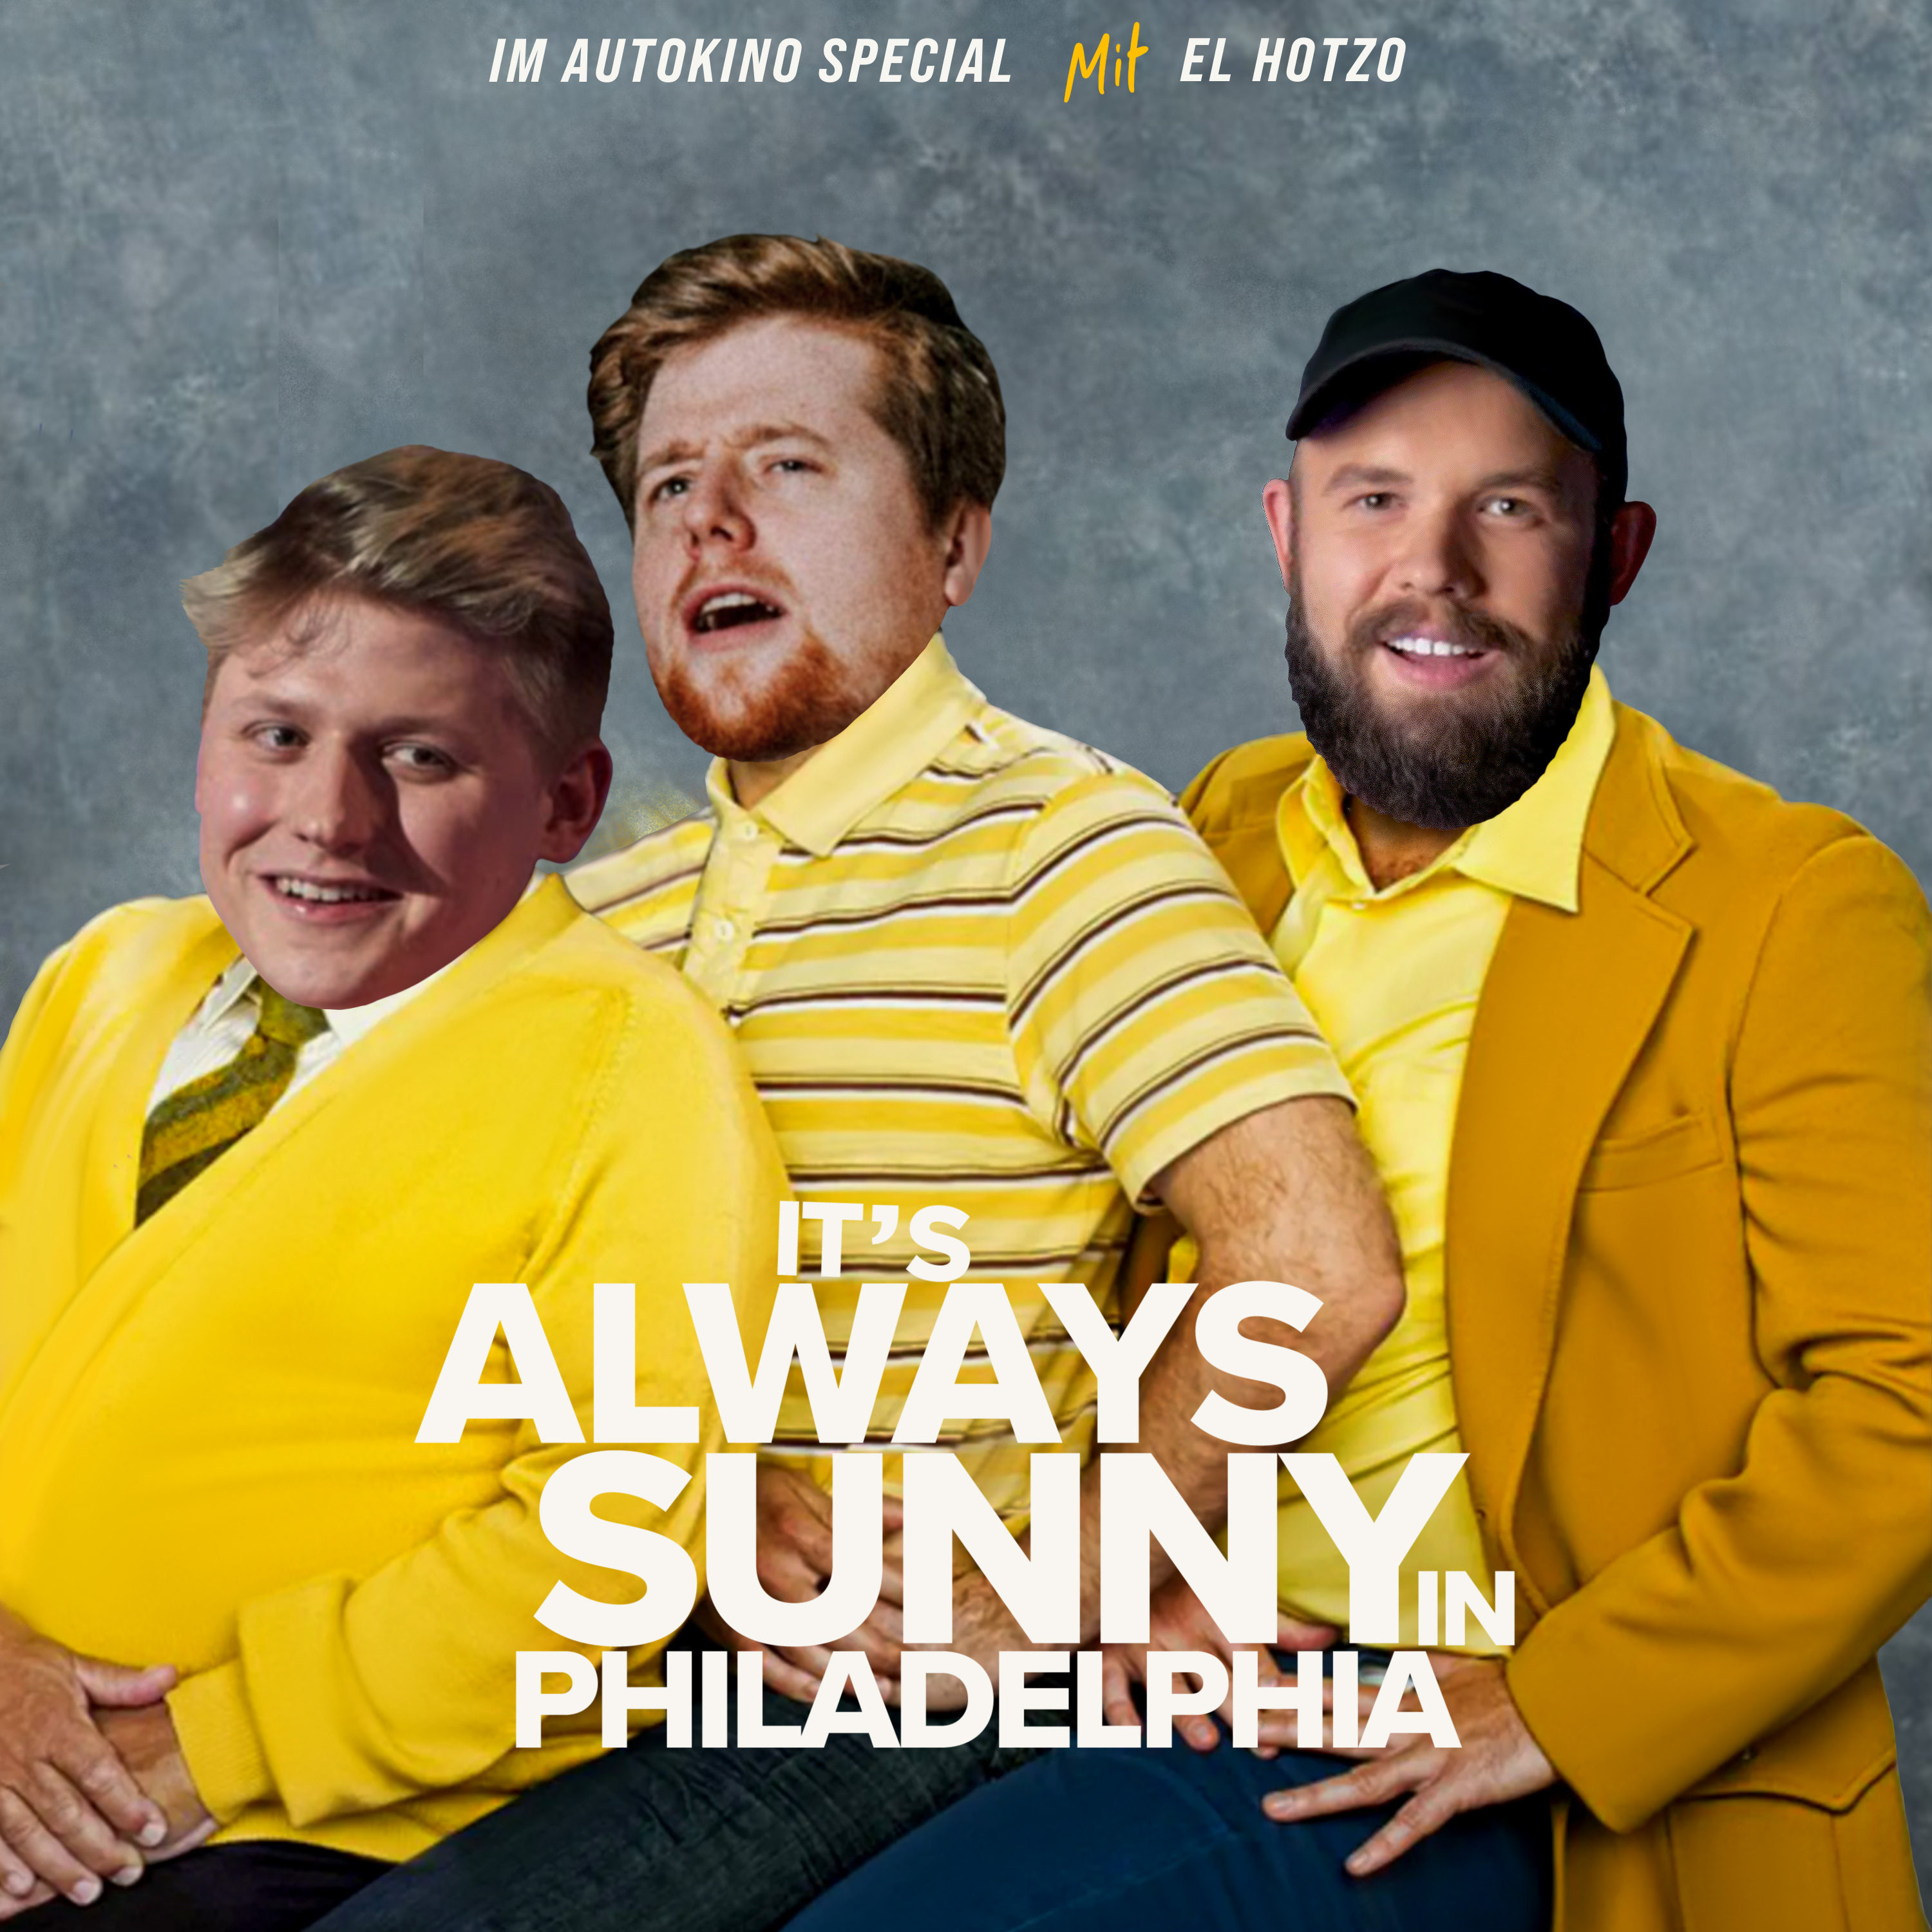 Folge 155 - It's always sunny in Philadelphia (feat. El Hotzo)